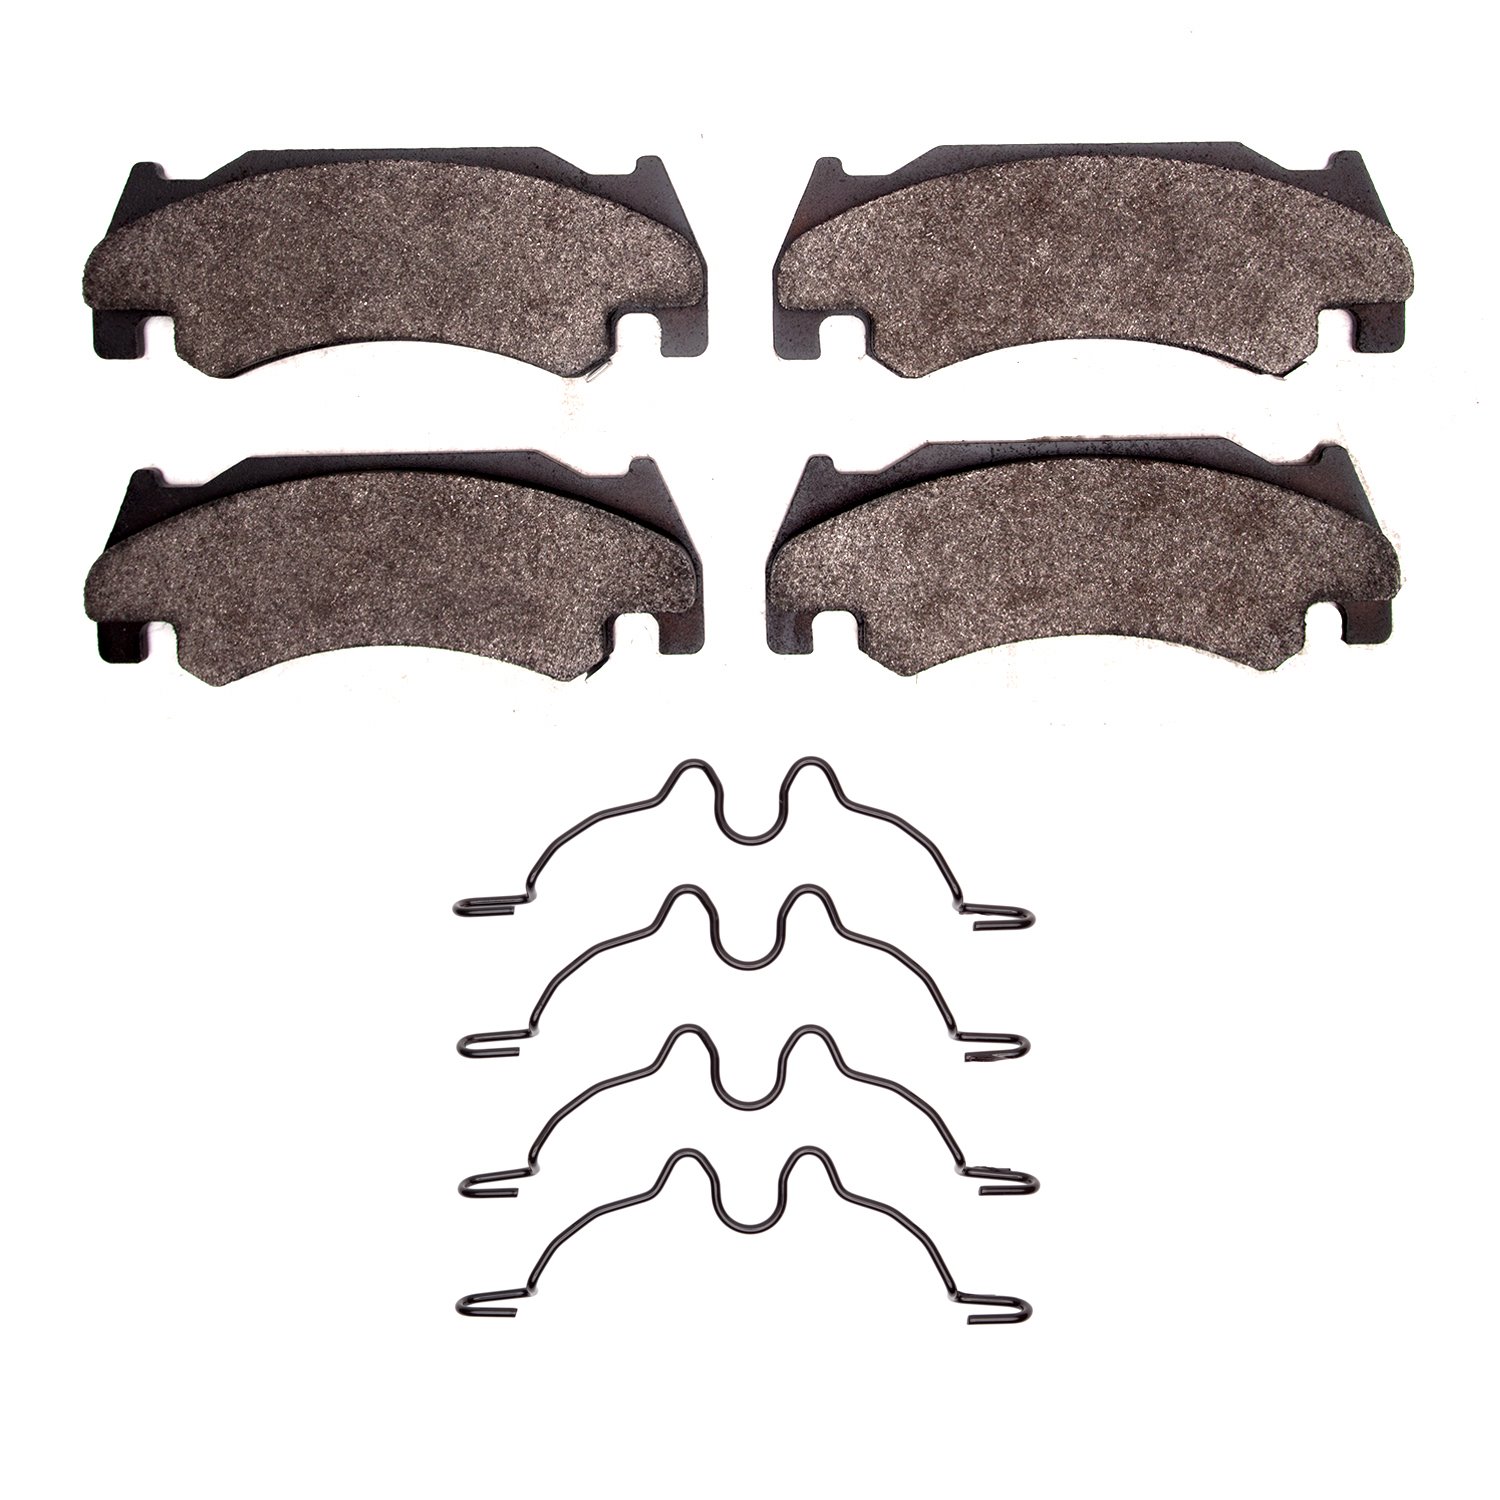 1311-1085-01 3000-Series Semi-Metallic Brake Pads & Hardware Kit, 2005-2006 Mopar, Position: Front